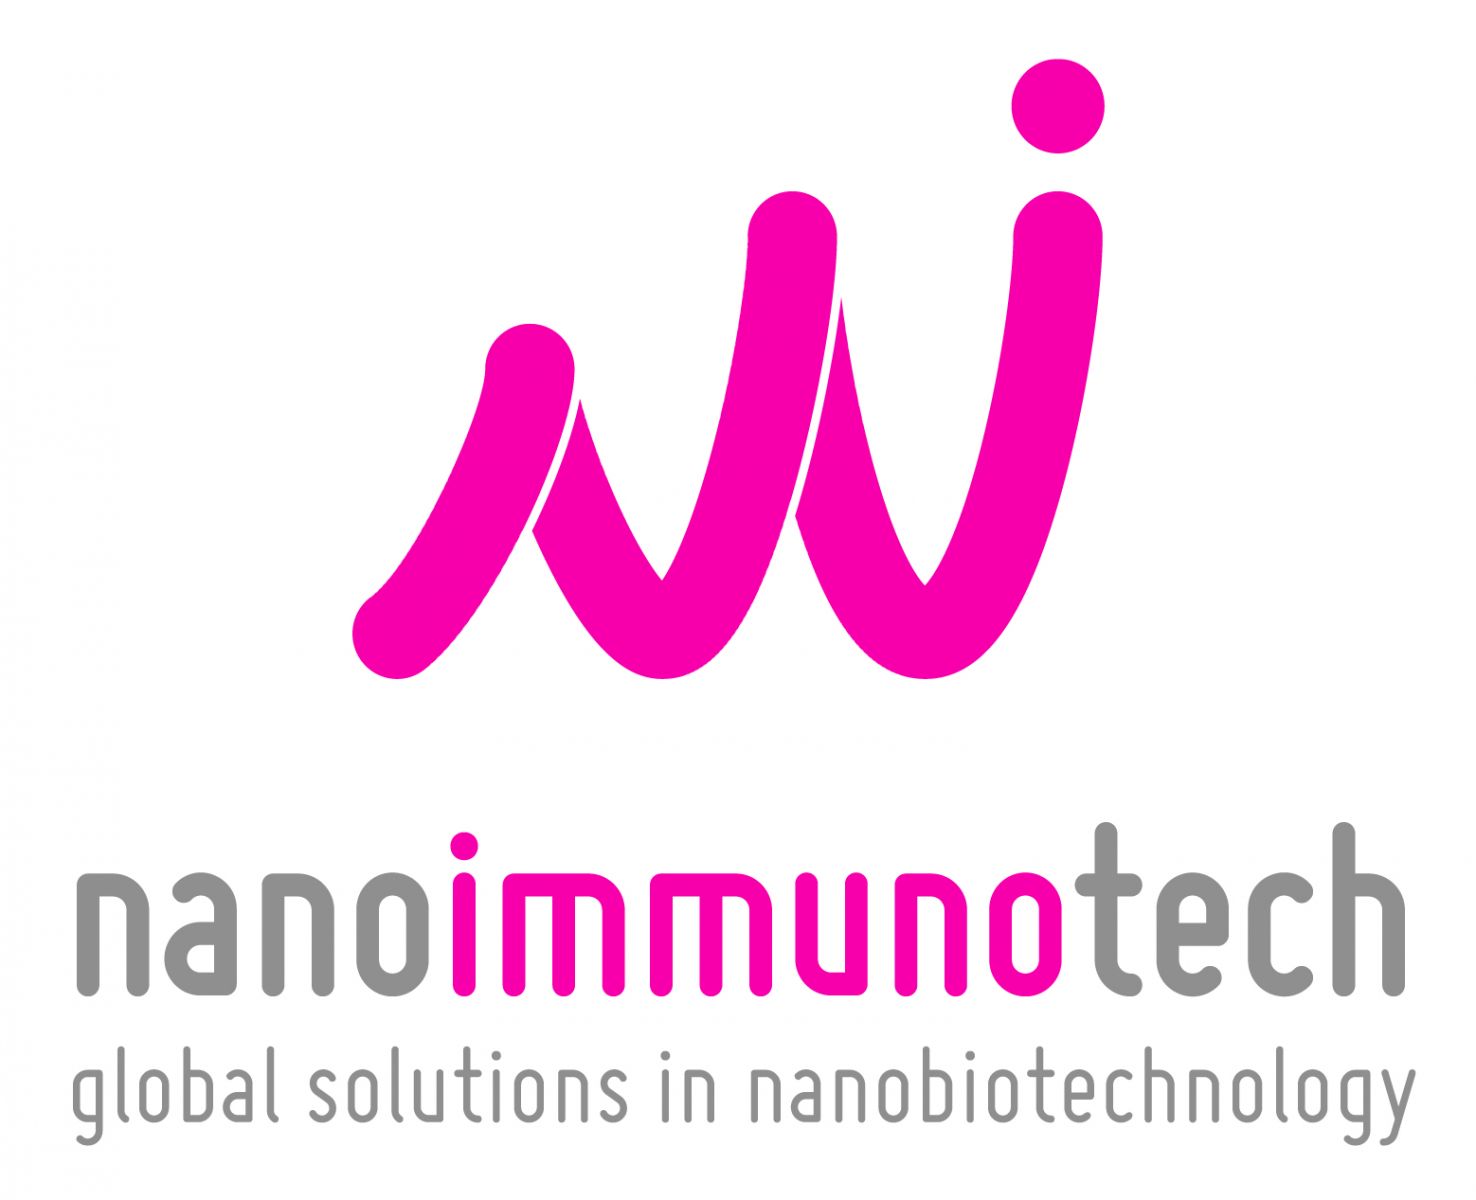 nanoimmunotech